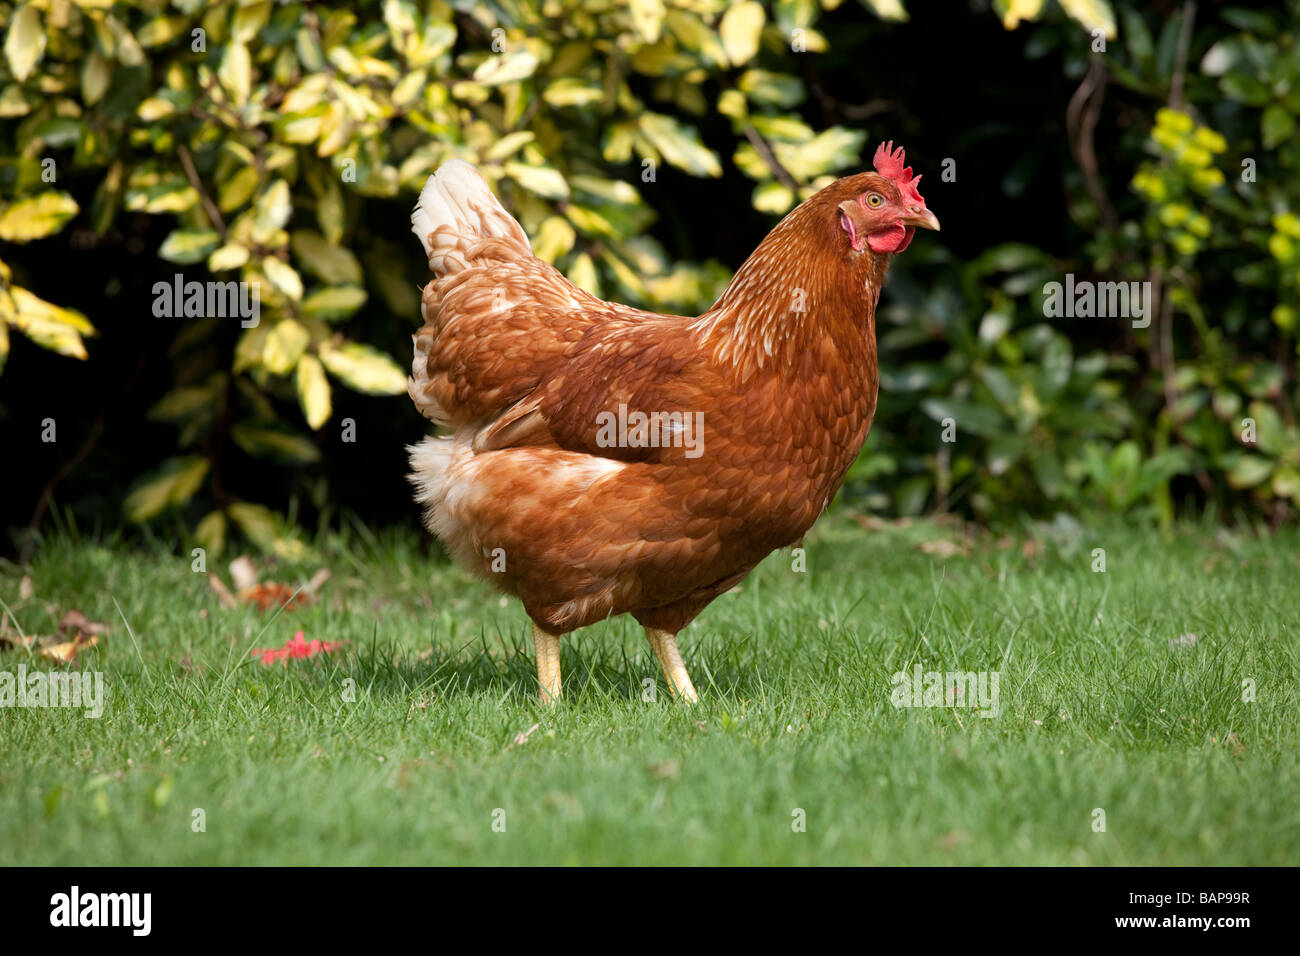 Chicken in a garden Stock Photo